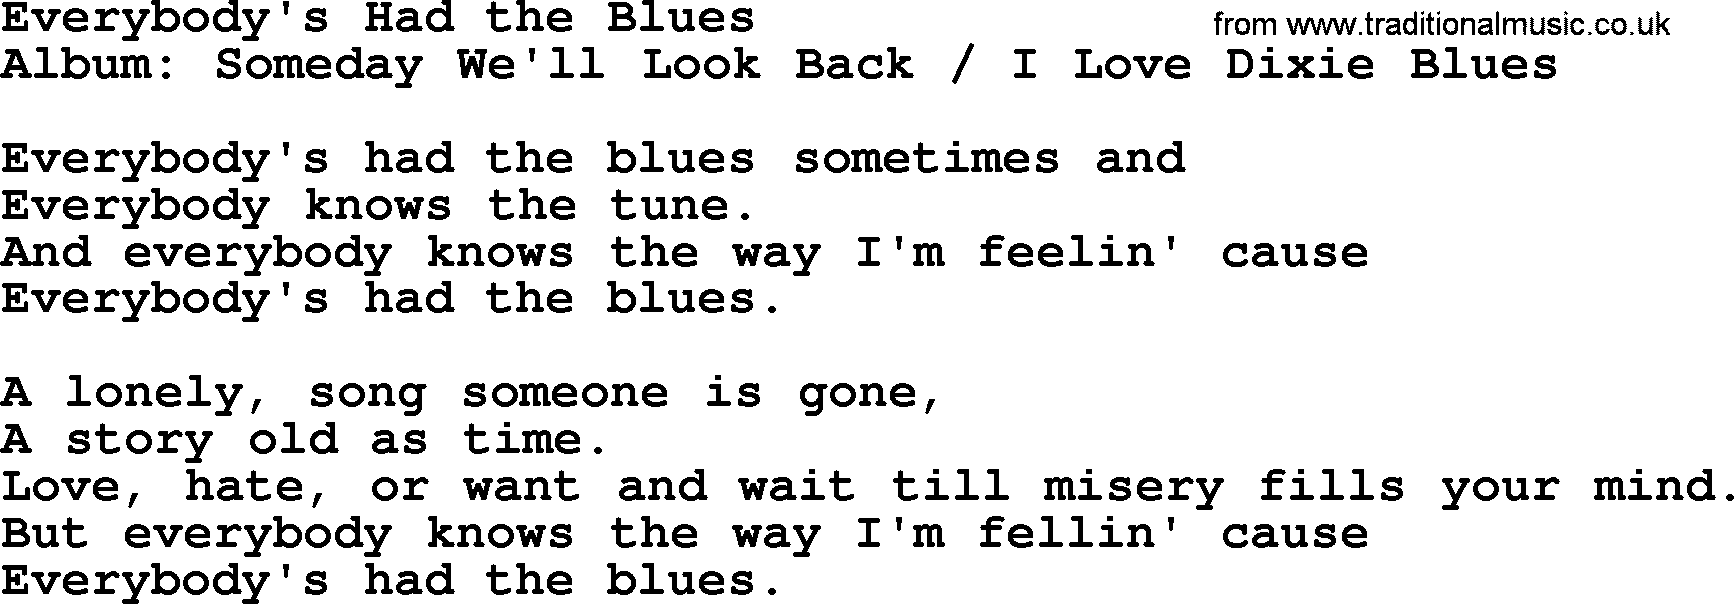 Merle Haggard song: Everybody's Had The Blues, lyrics.